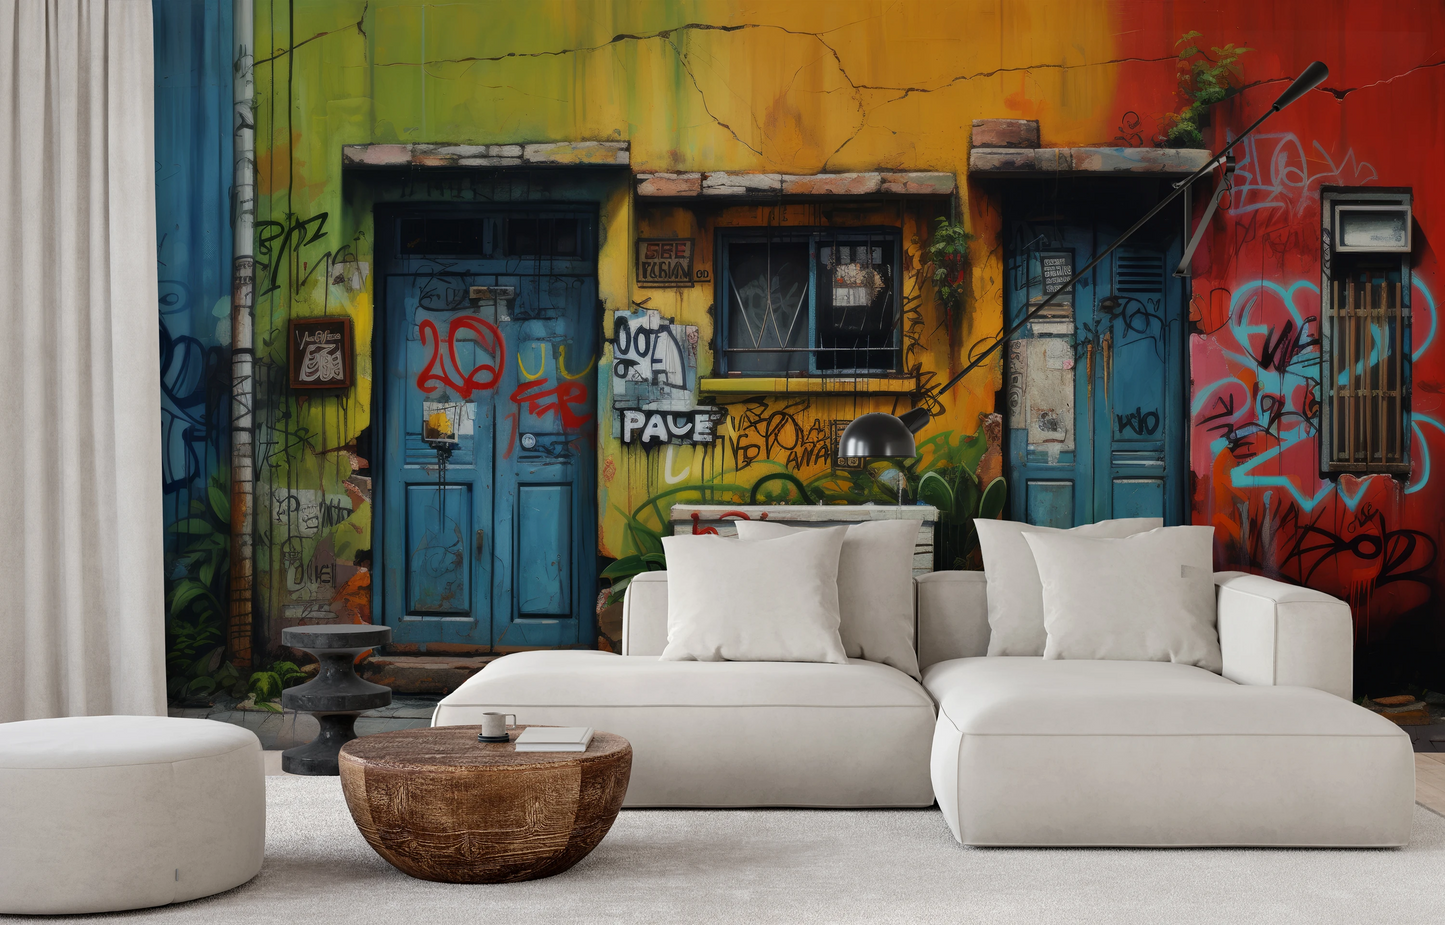 Fototapeta malowana o nazwie Vivid Alleys pokazana w aranżacji wnętrza.